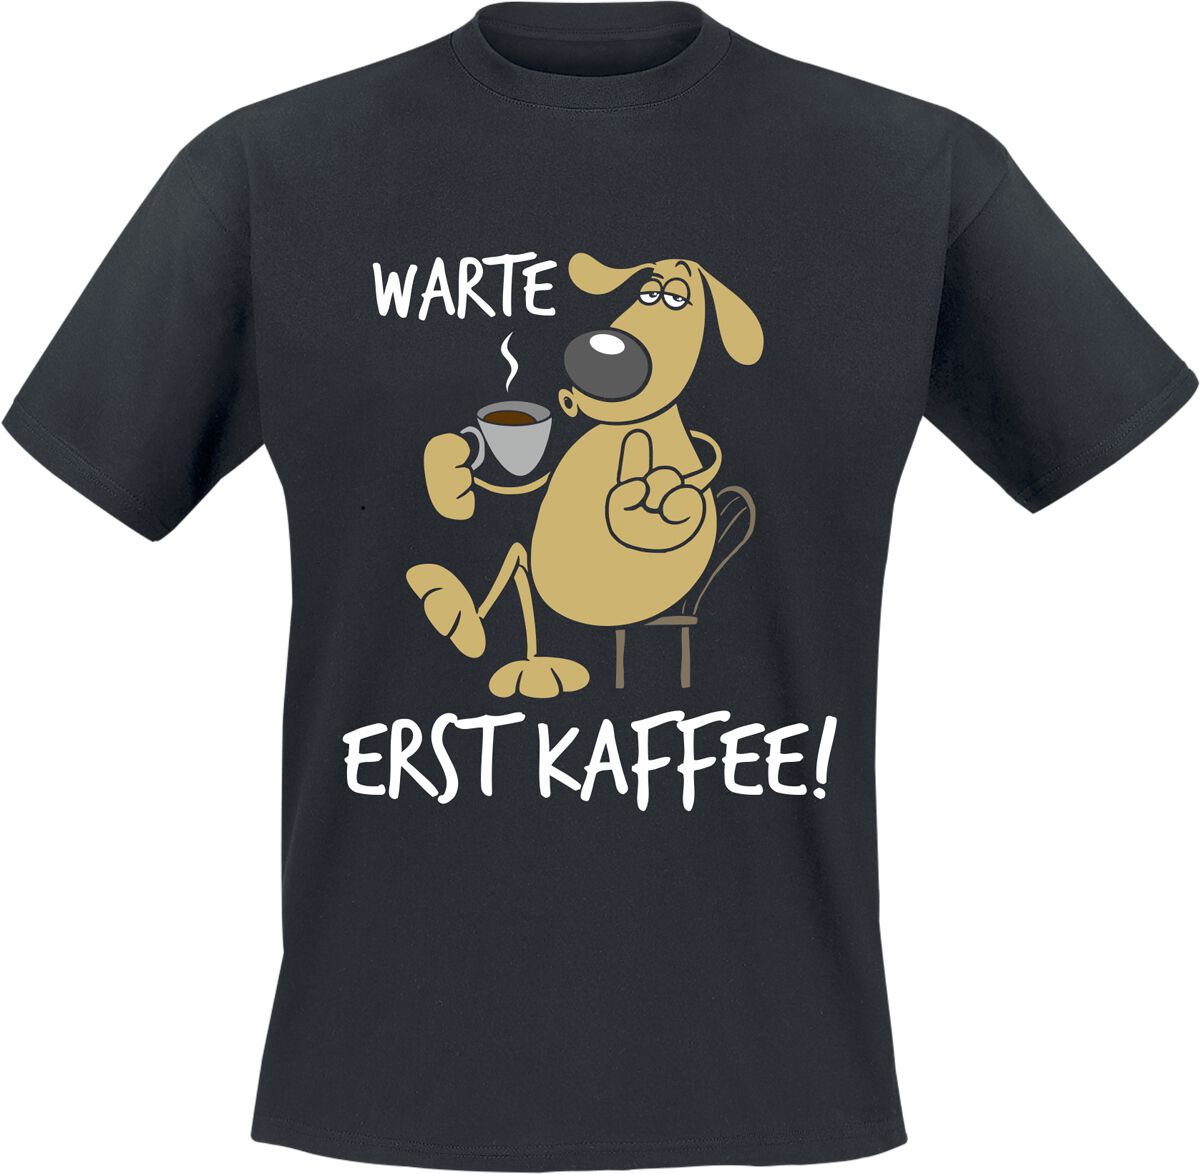 Tierisch T-Shirt - Warte - Erst Kaffee! - L bis 3XL - für Männer - Größe 3XL - schwarz